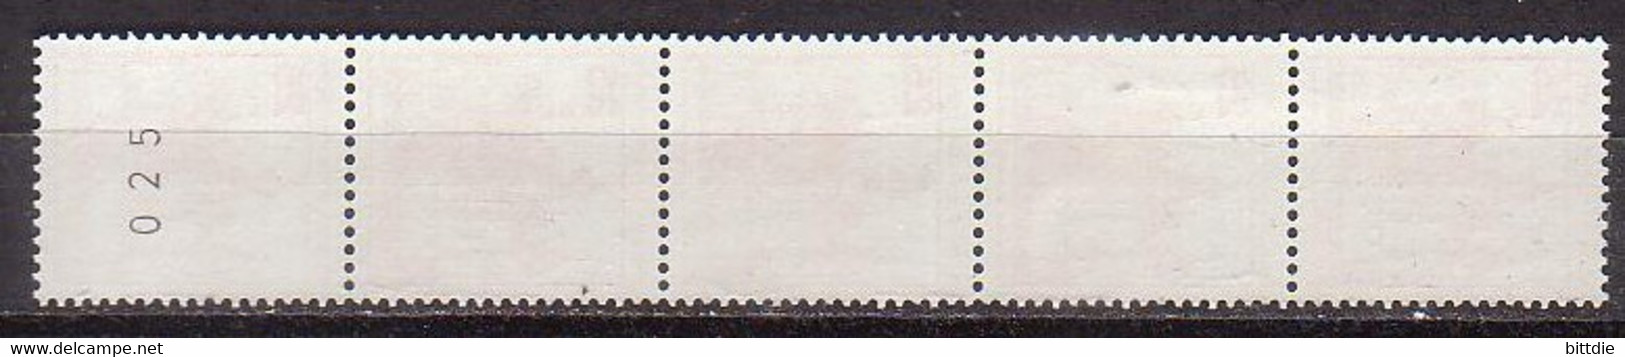 Berlin 587 R , Xx , 5er-Streifen (R 1087) - Rollenmarken